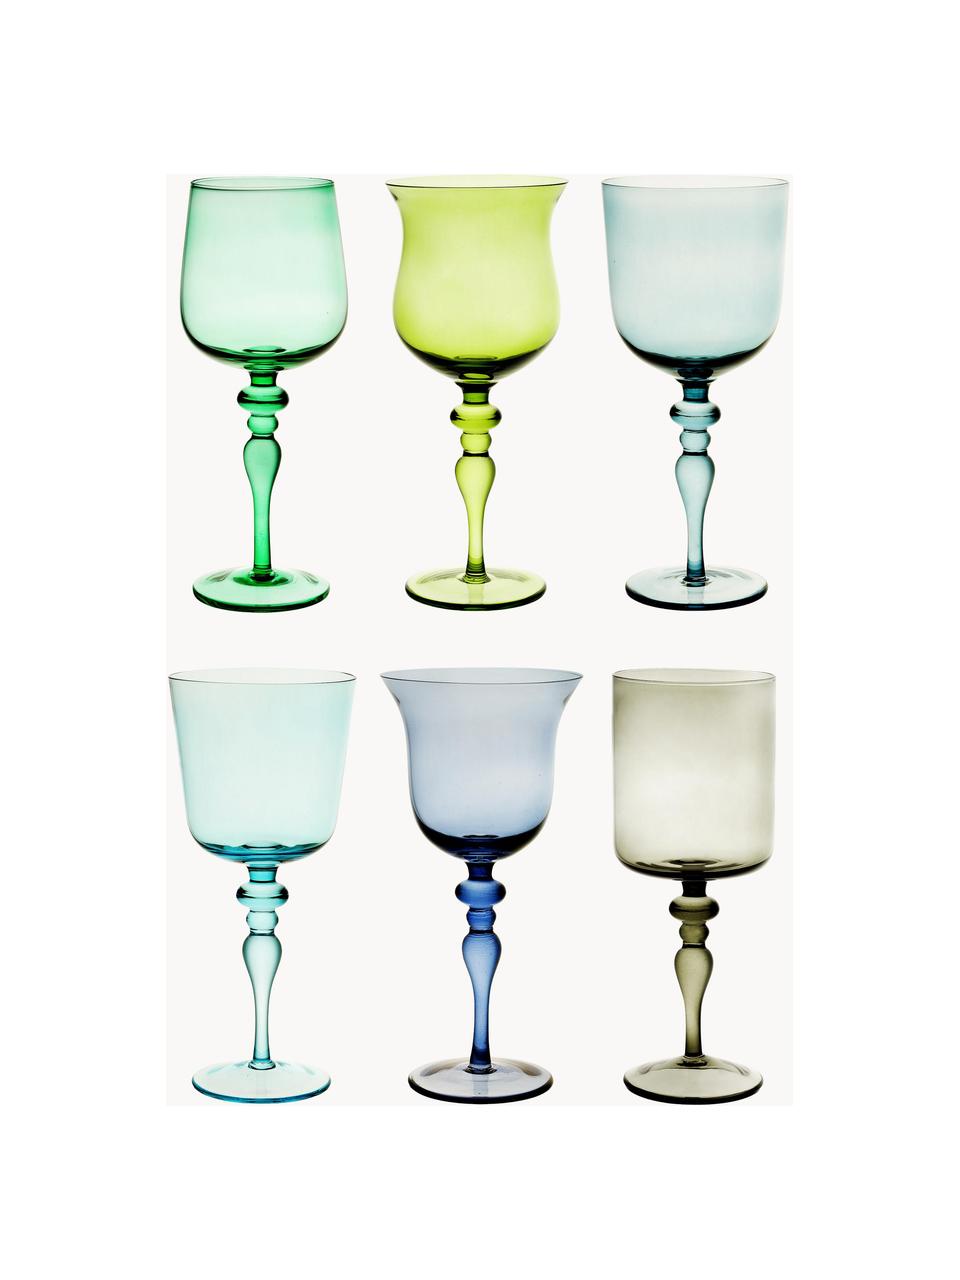 Mundgeblasene Weingläser Diseguale in unterschiedlichen Farben und Formen, 6er-Set, Glas, mundgeblasen, Grüntöne, Blautöne, Ø 8 x H 20 cm, 200 ml